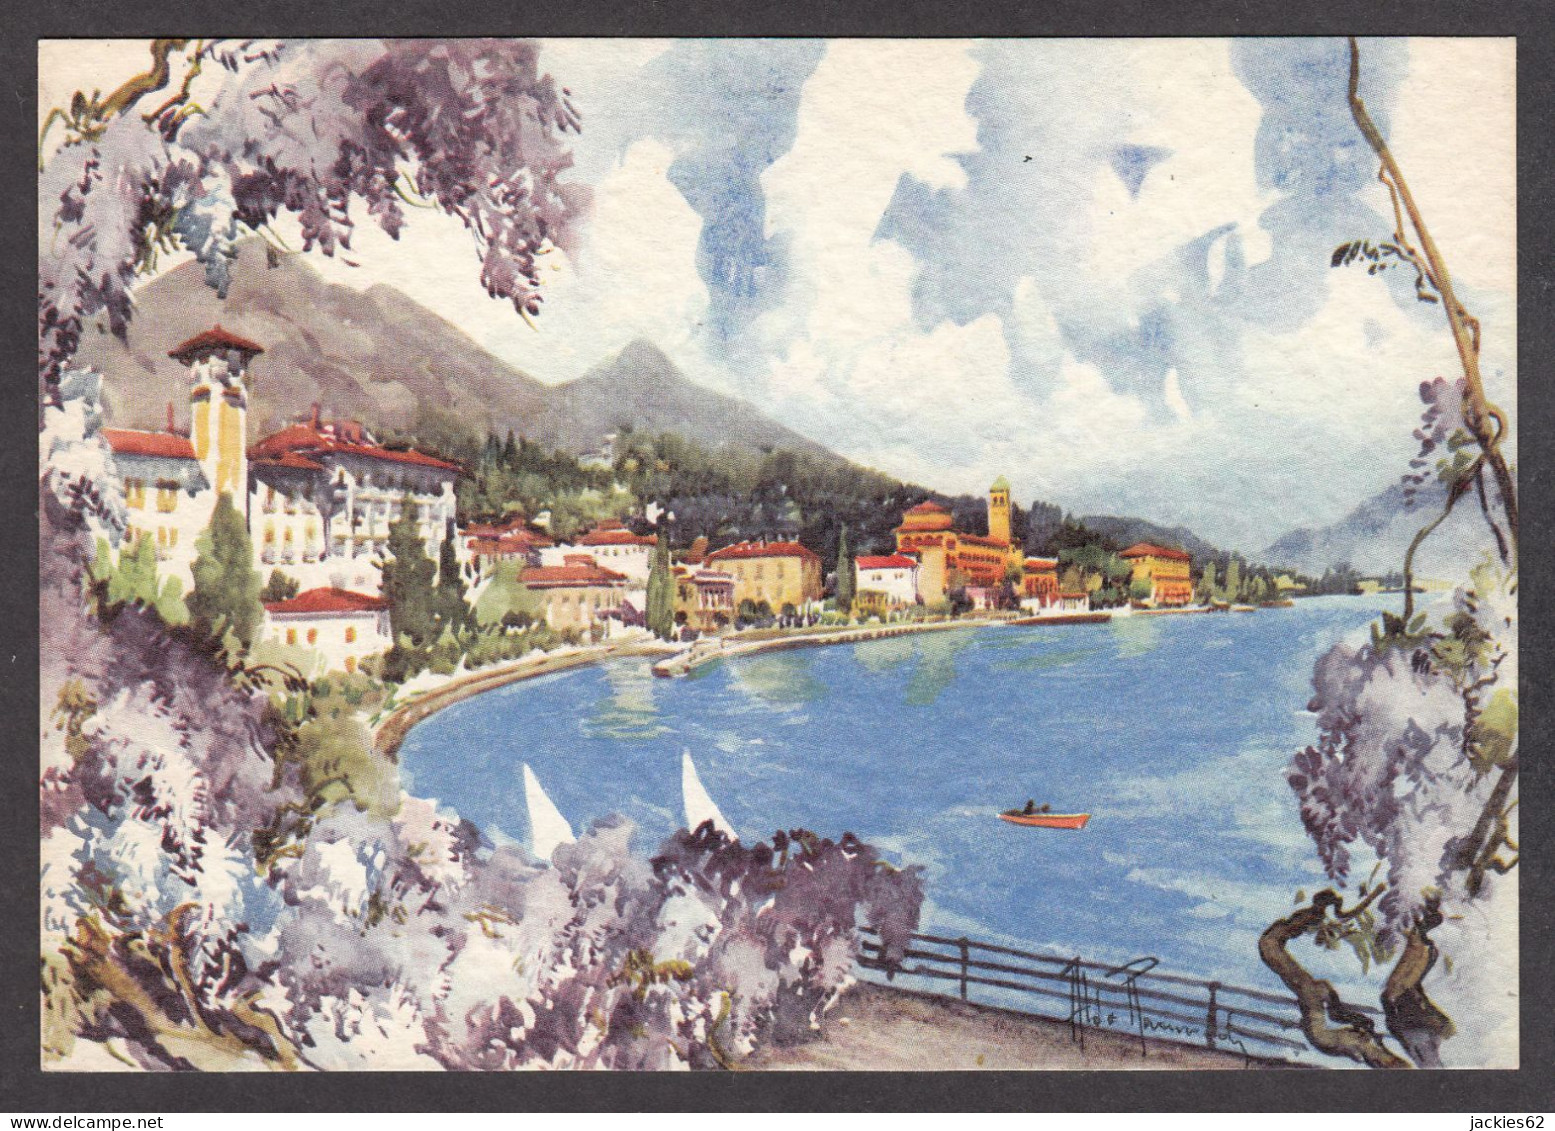 PR345/ Aldo RAIMONDI, *Gardone Riviera, Lago Di Garda* - Paintings